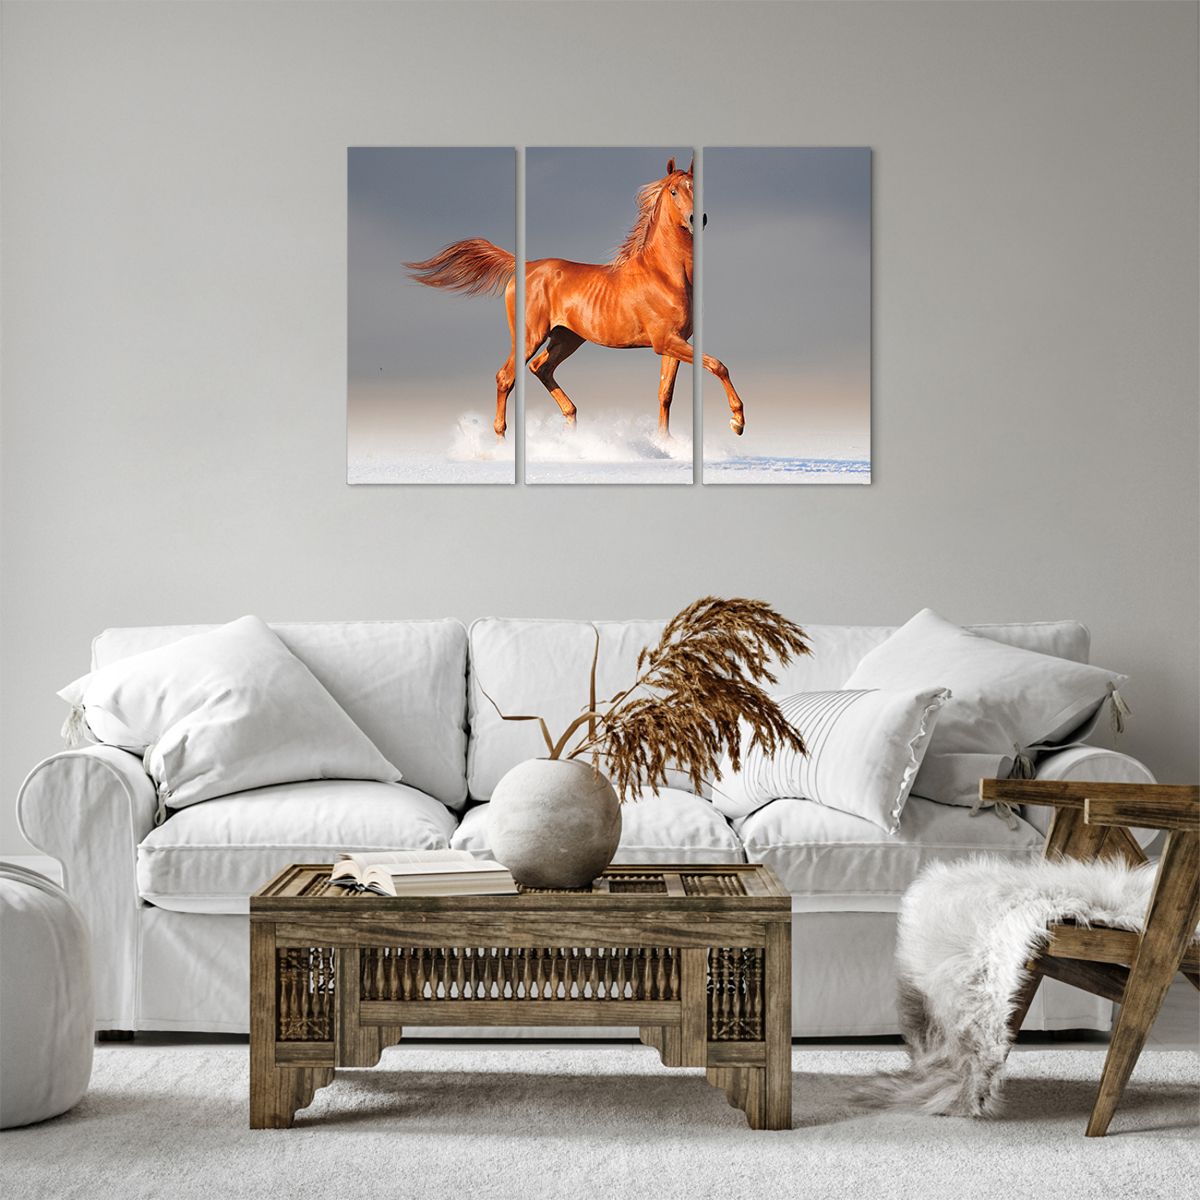 Bild auf Leinwand Tiere, Bild auf Leinwand Pferd, Bild auf Leinwand Natur, Bild auf Leinwand Schnee, Bild auf Leinwand Meister